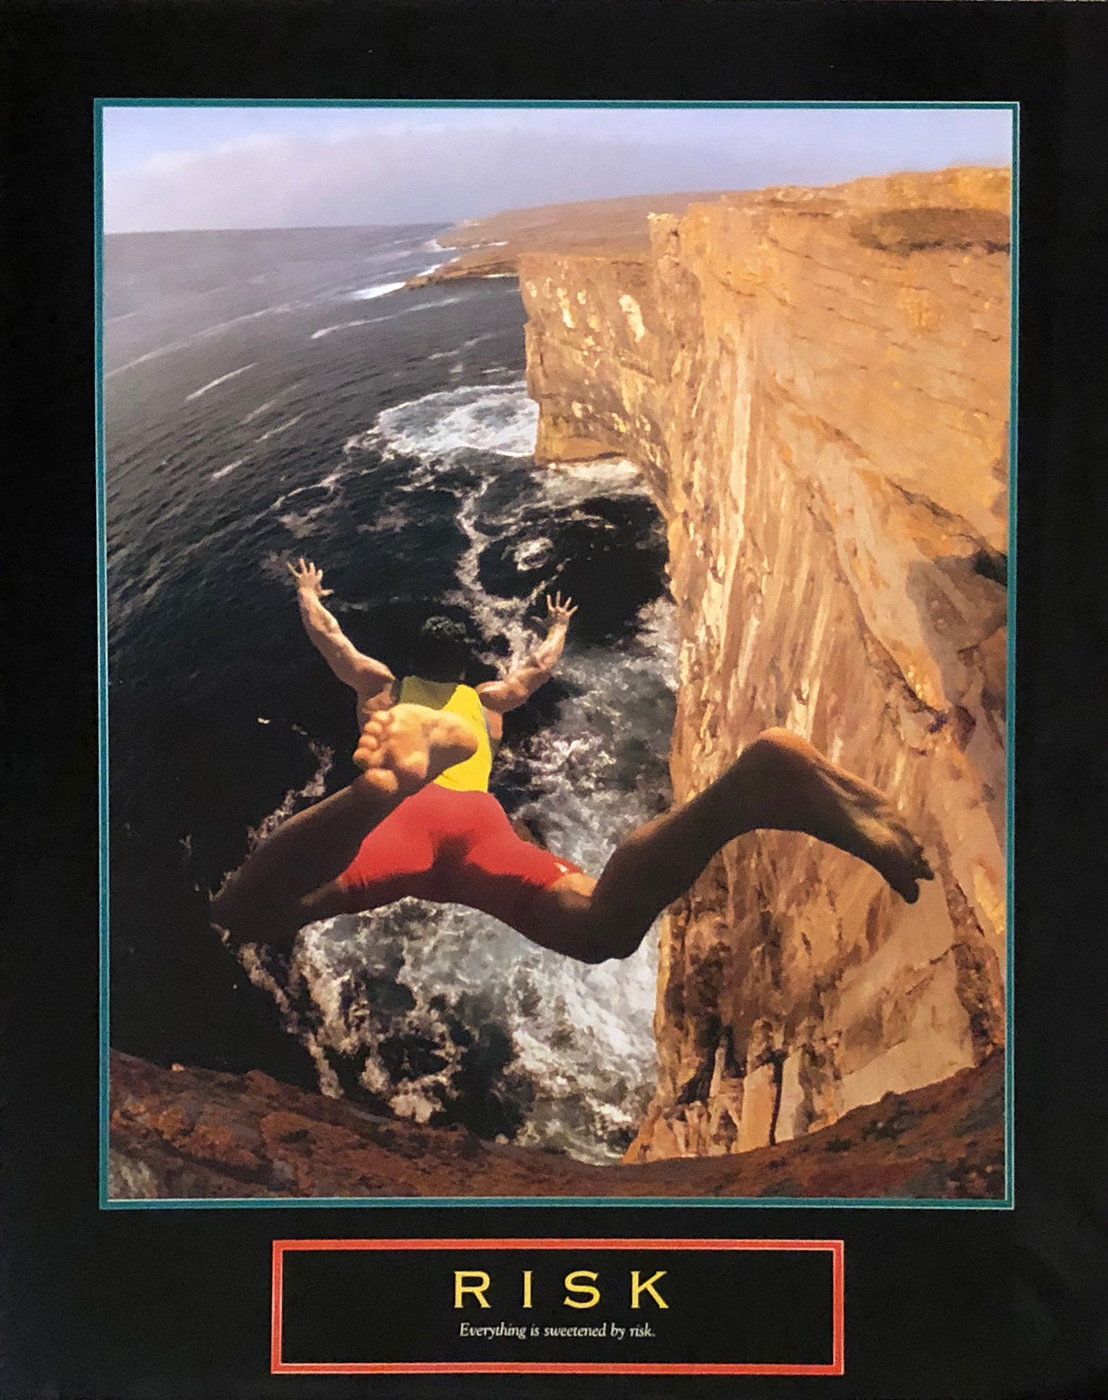 Risk - Cliff Jumper